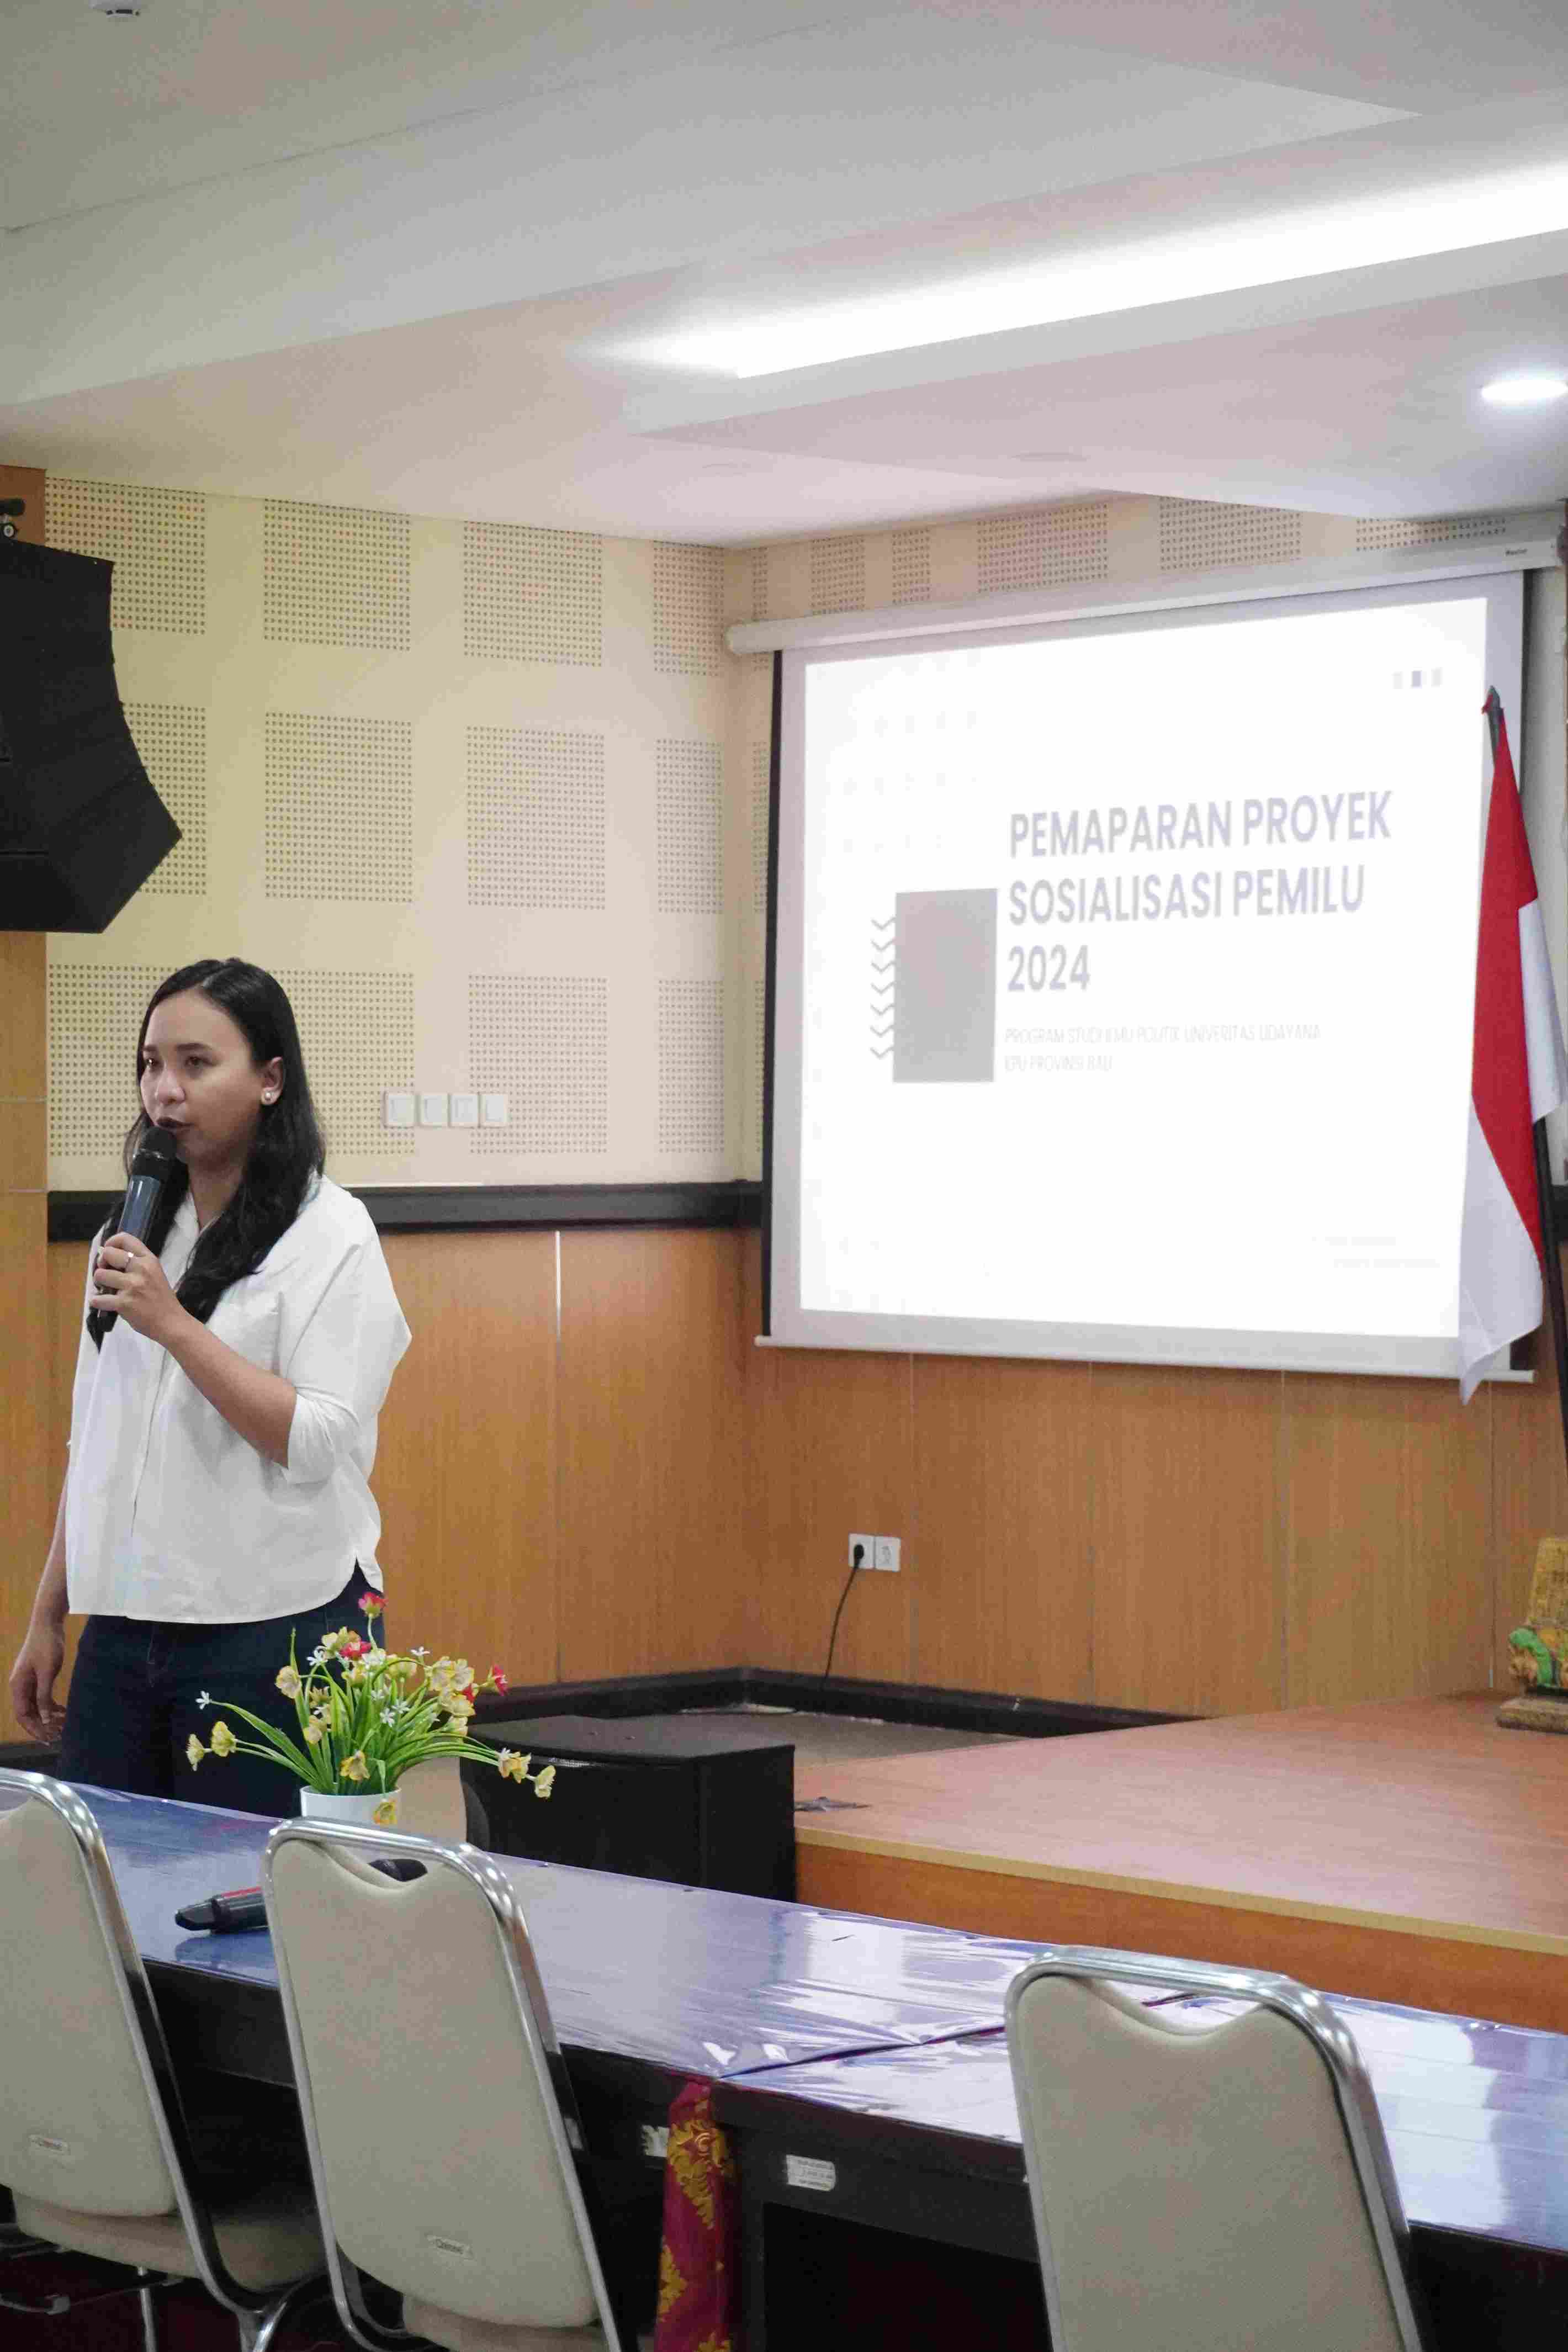 Hadirkan perwakilan KPU se-Bali, Prodi Ilmu Politik Laksanakan Pemaparan Proyek Sosialisasi Pemilu 2024